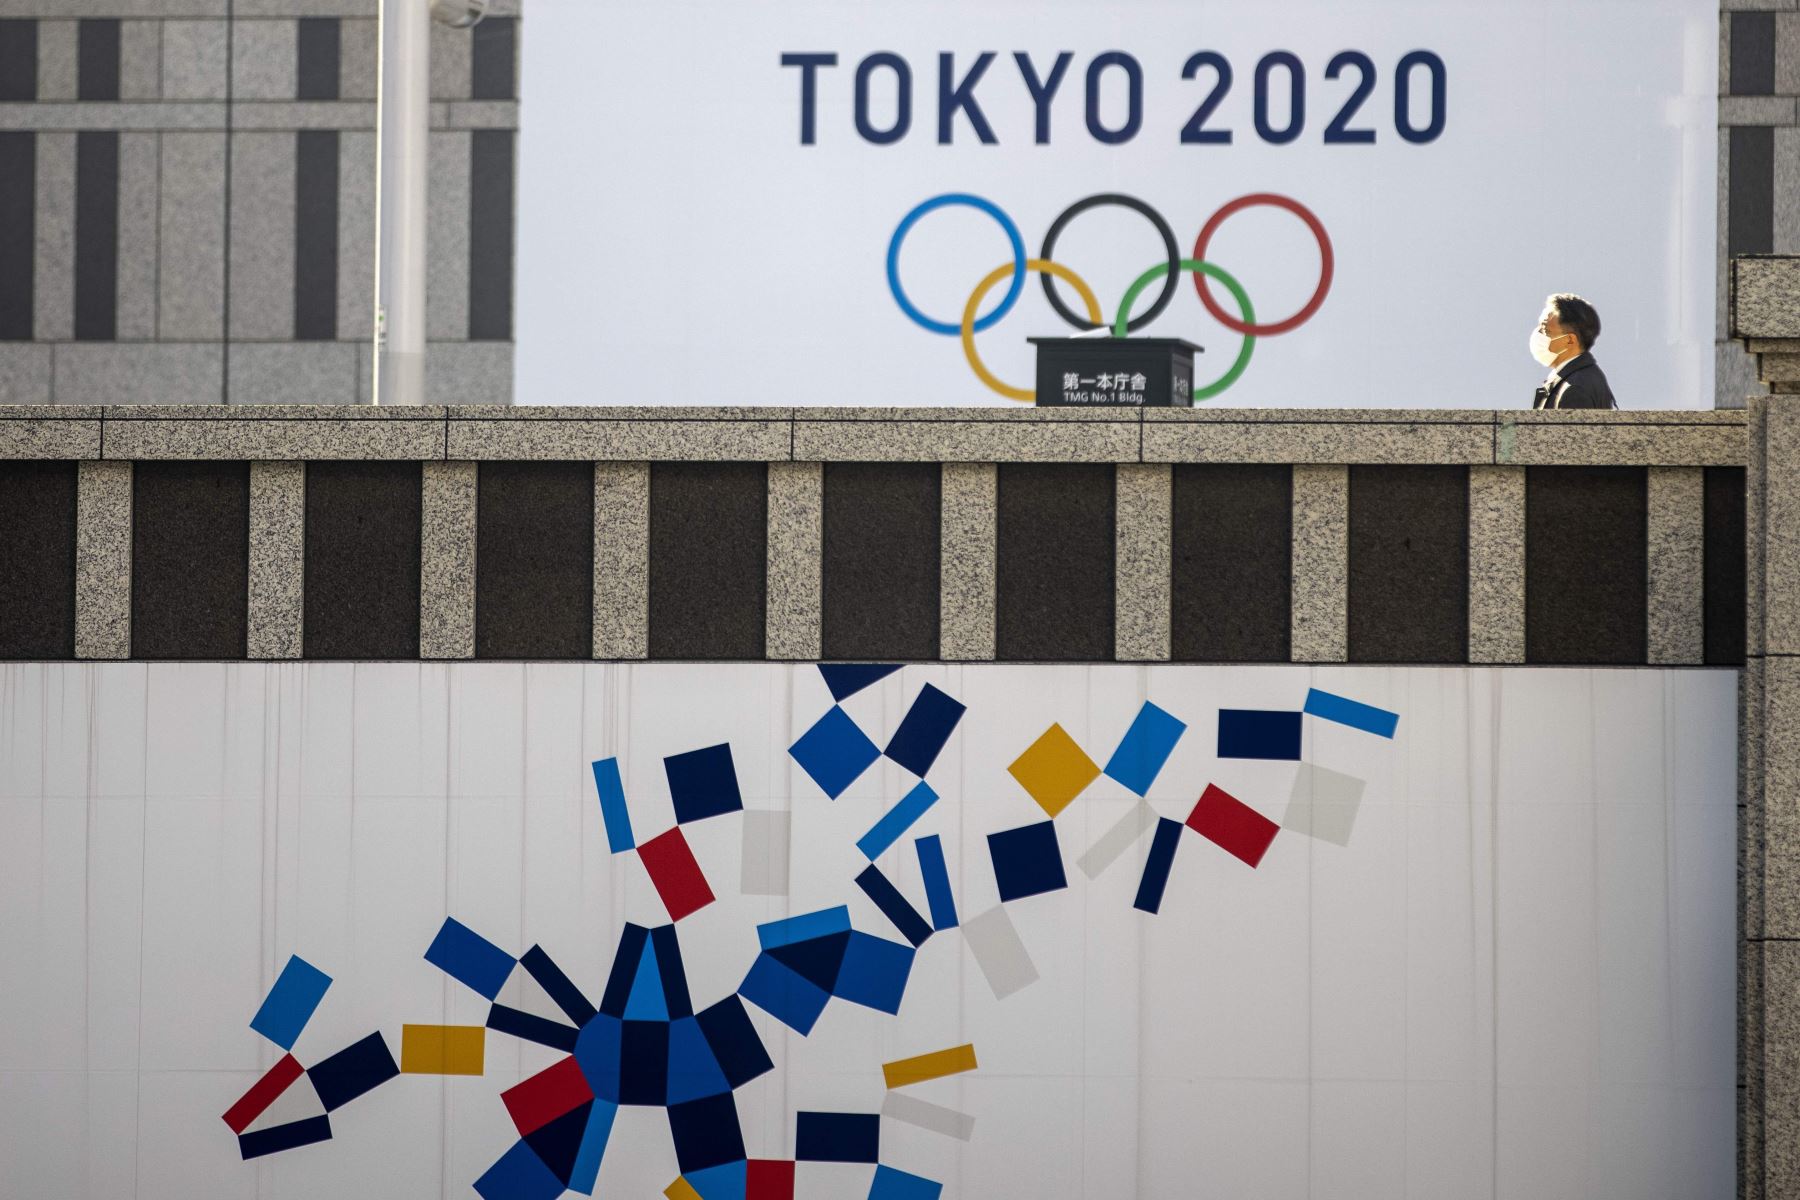 Los Juegos Olímpicos Tokio 2020 previstos para este verano, pero puestos en duda por rumores sobre su posible cancelación, van camino a convertirse en los más caros de la historia.
Foto: AFP